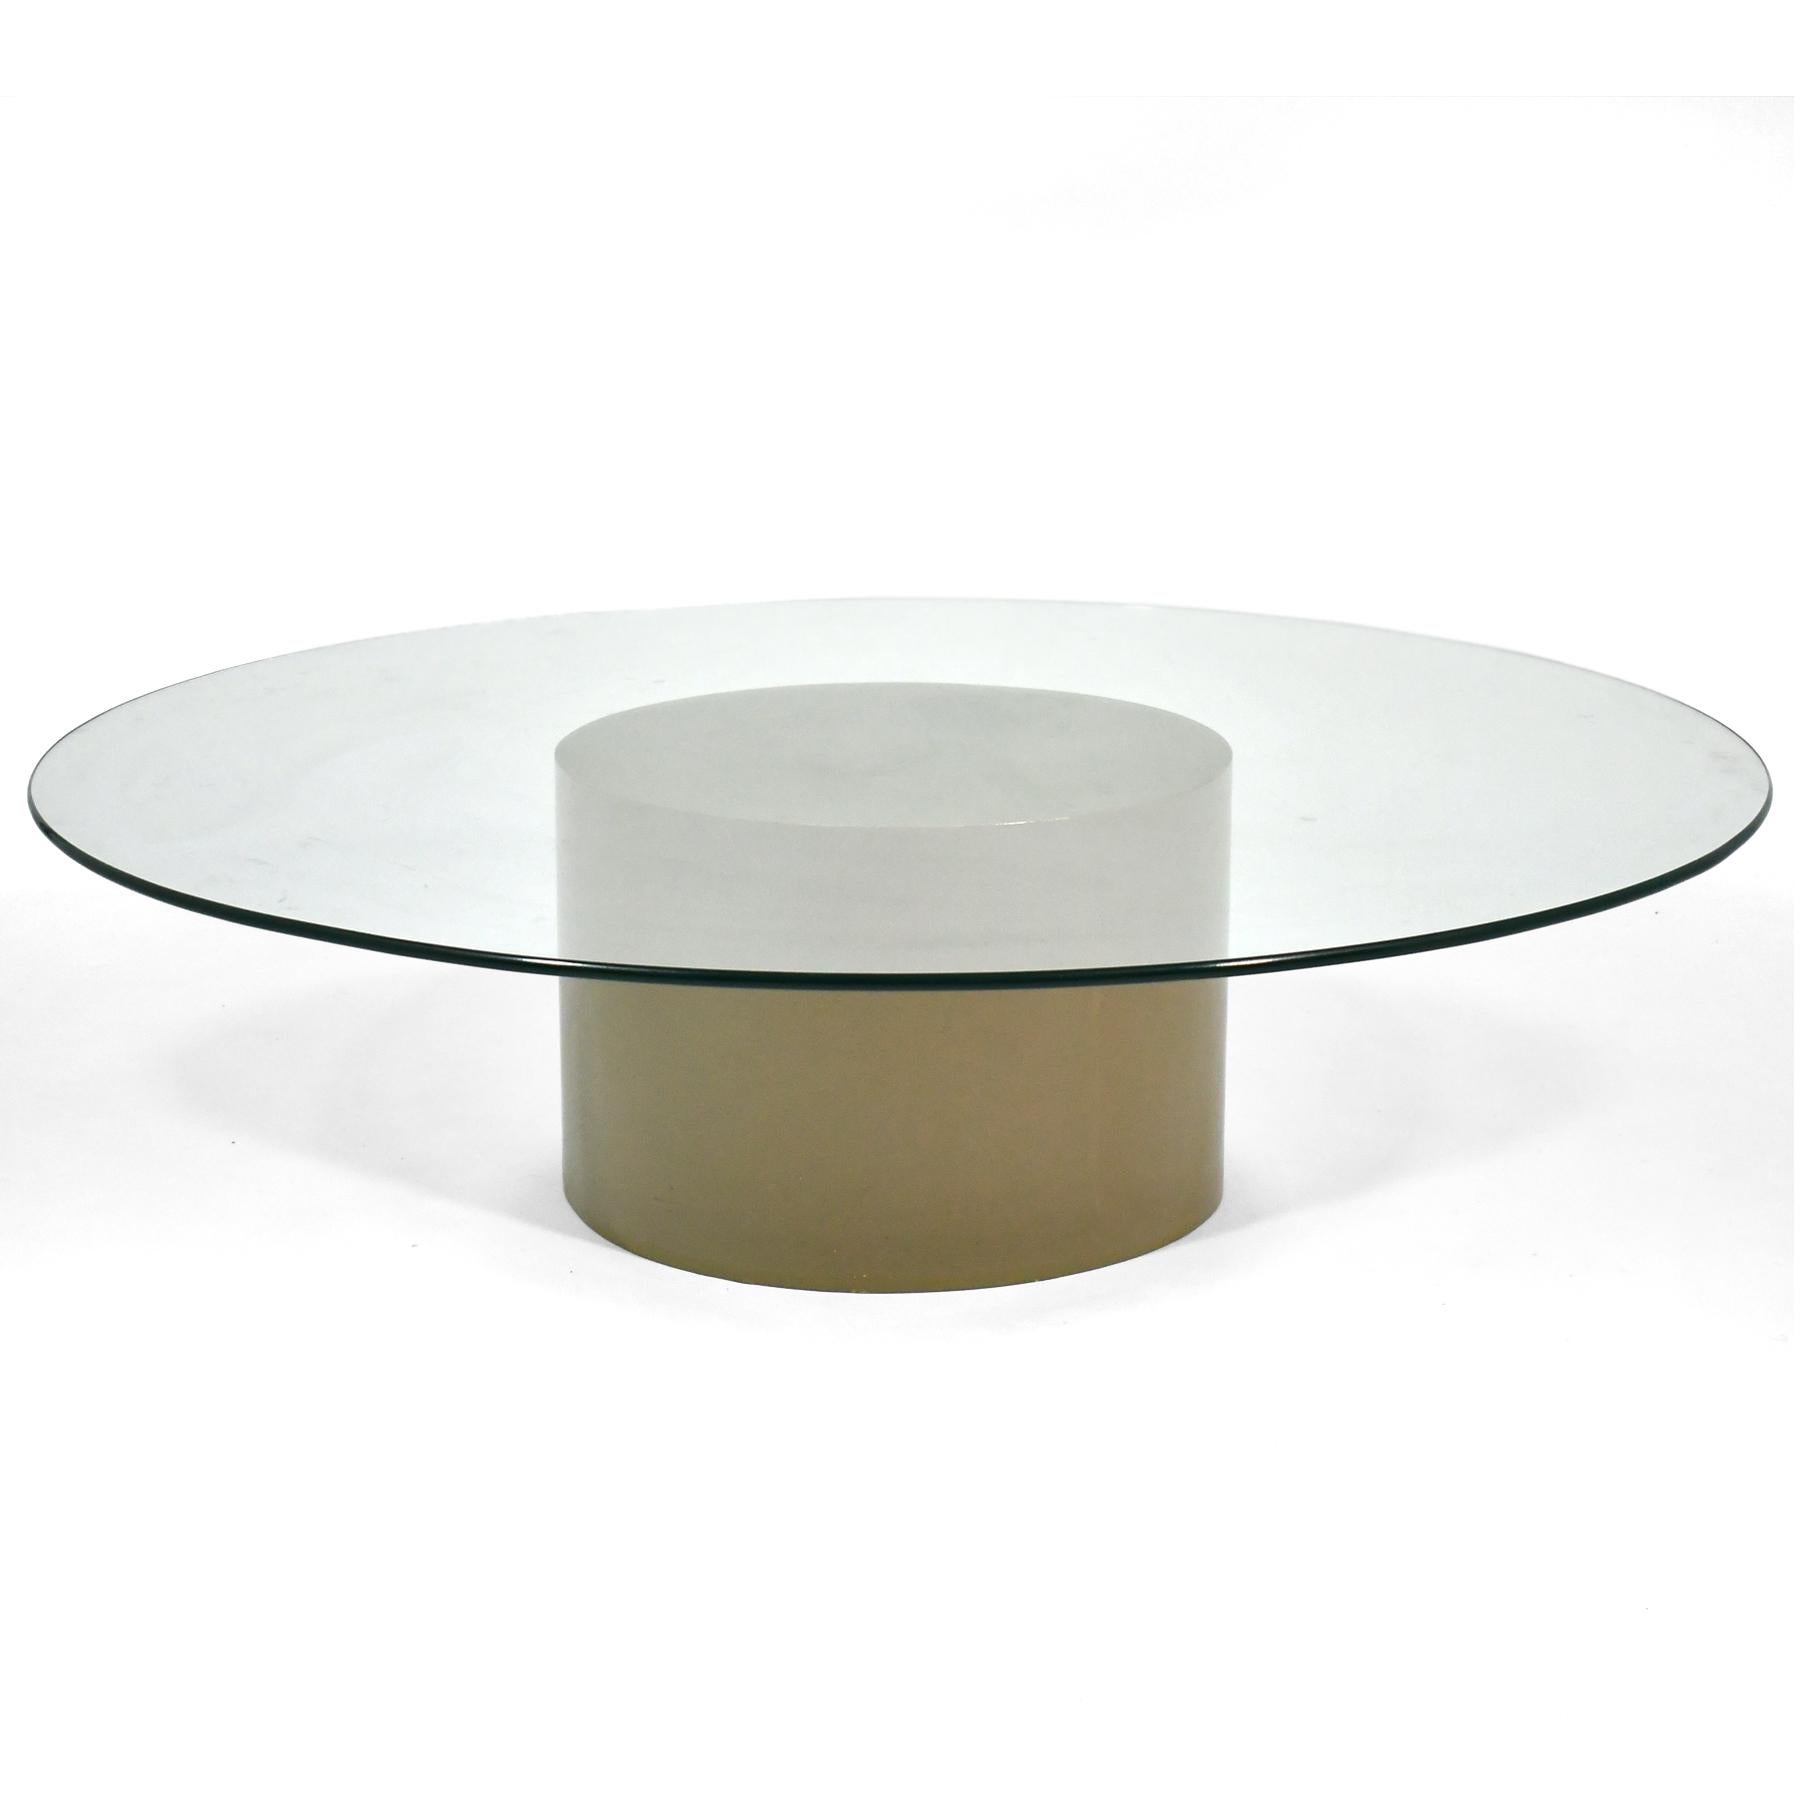 Cette table basse Milo Baughman de Thayer Coggin présente une base cylindrique en bois laqué d'un gris chaud, couleur mastic, avec un grand plateau rond de 54 pouces. Il a été fabriqué sur mesure pour servir au centre d'un grand canapé sectionnel